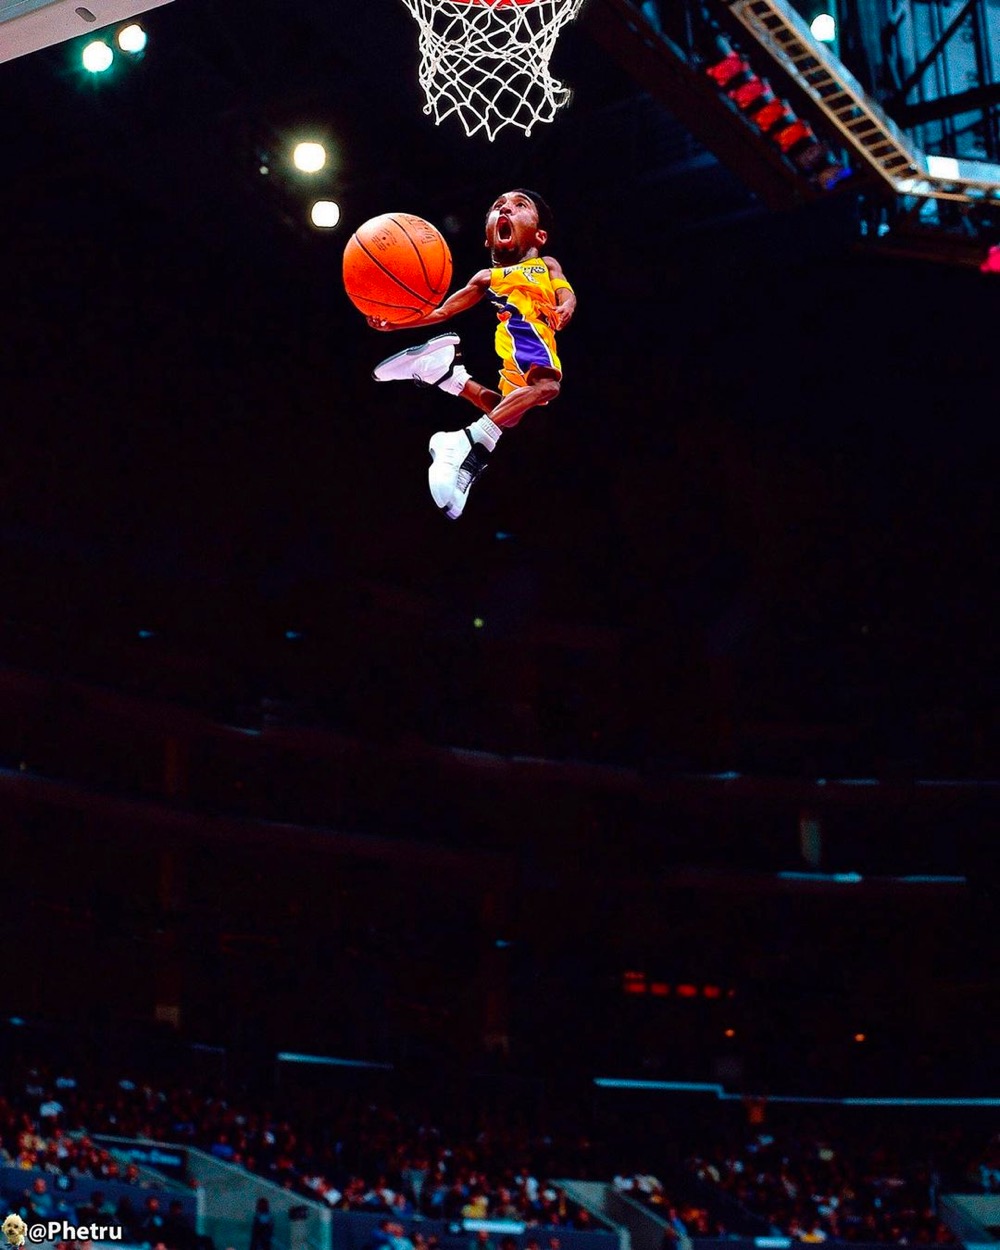 a tiny Kobe Bryant dunking